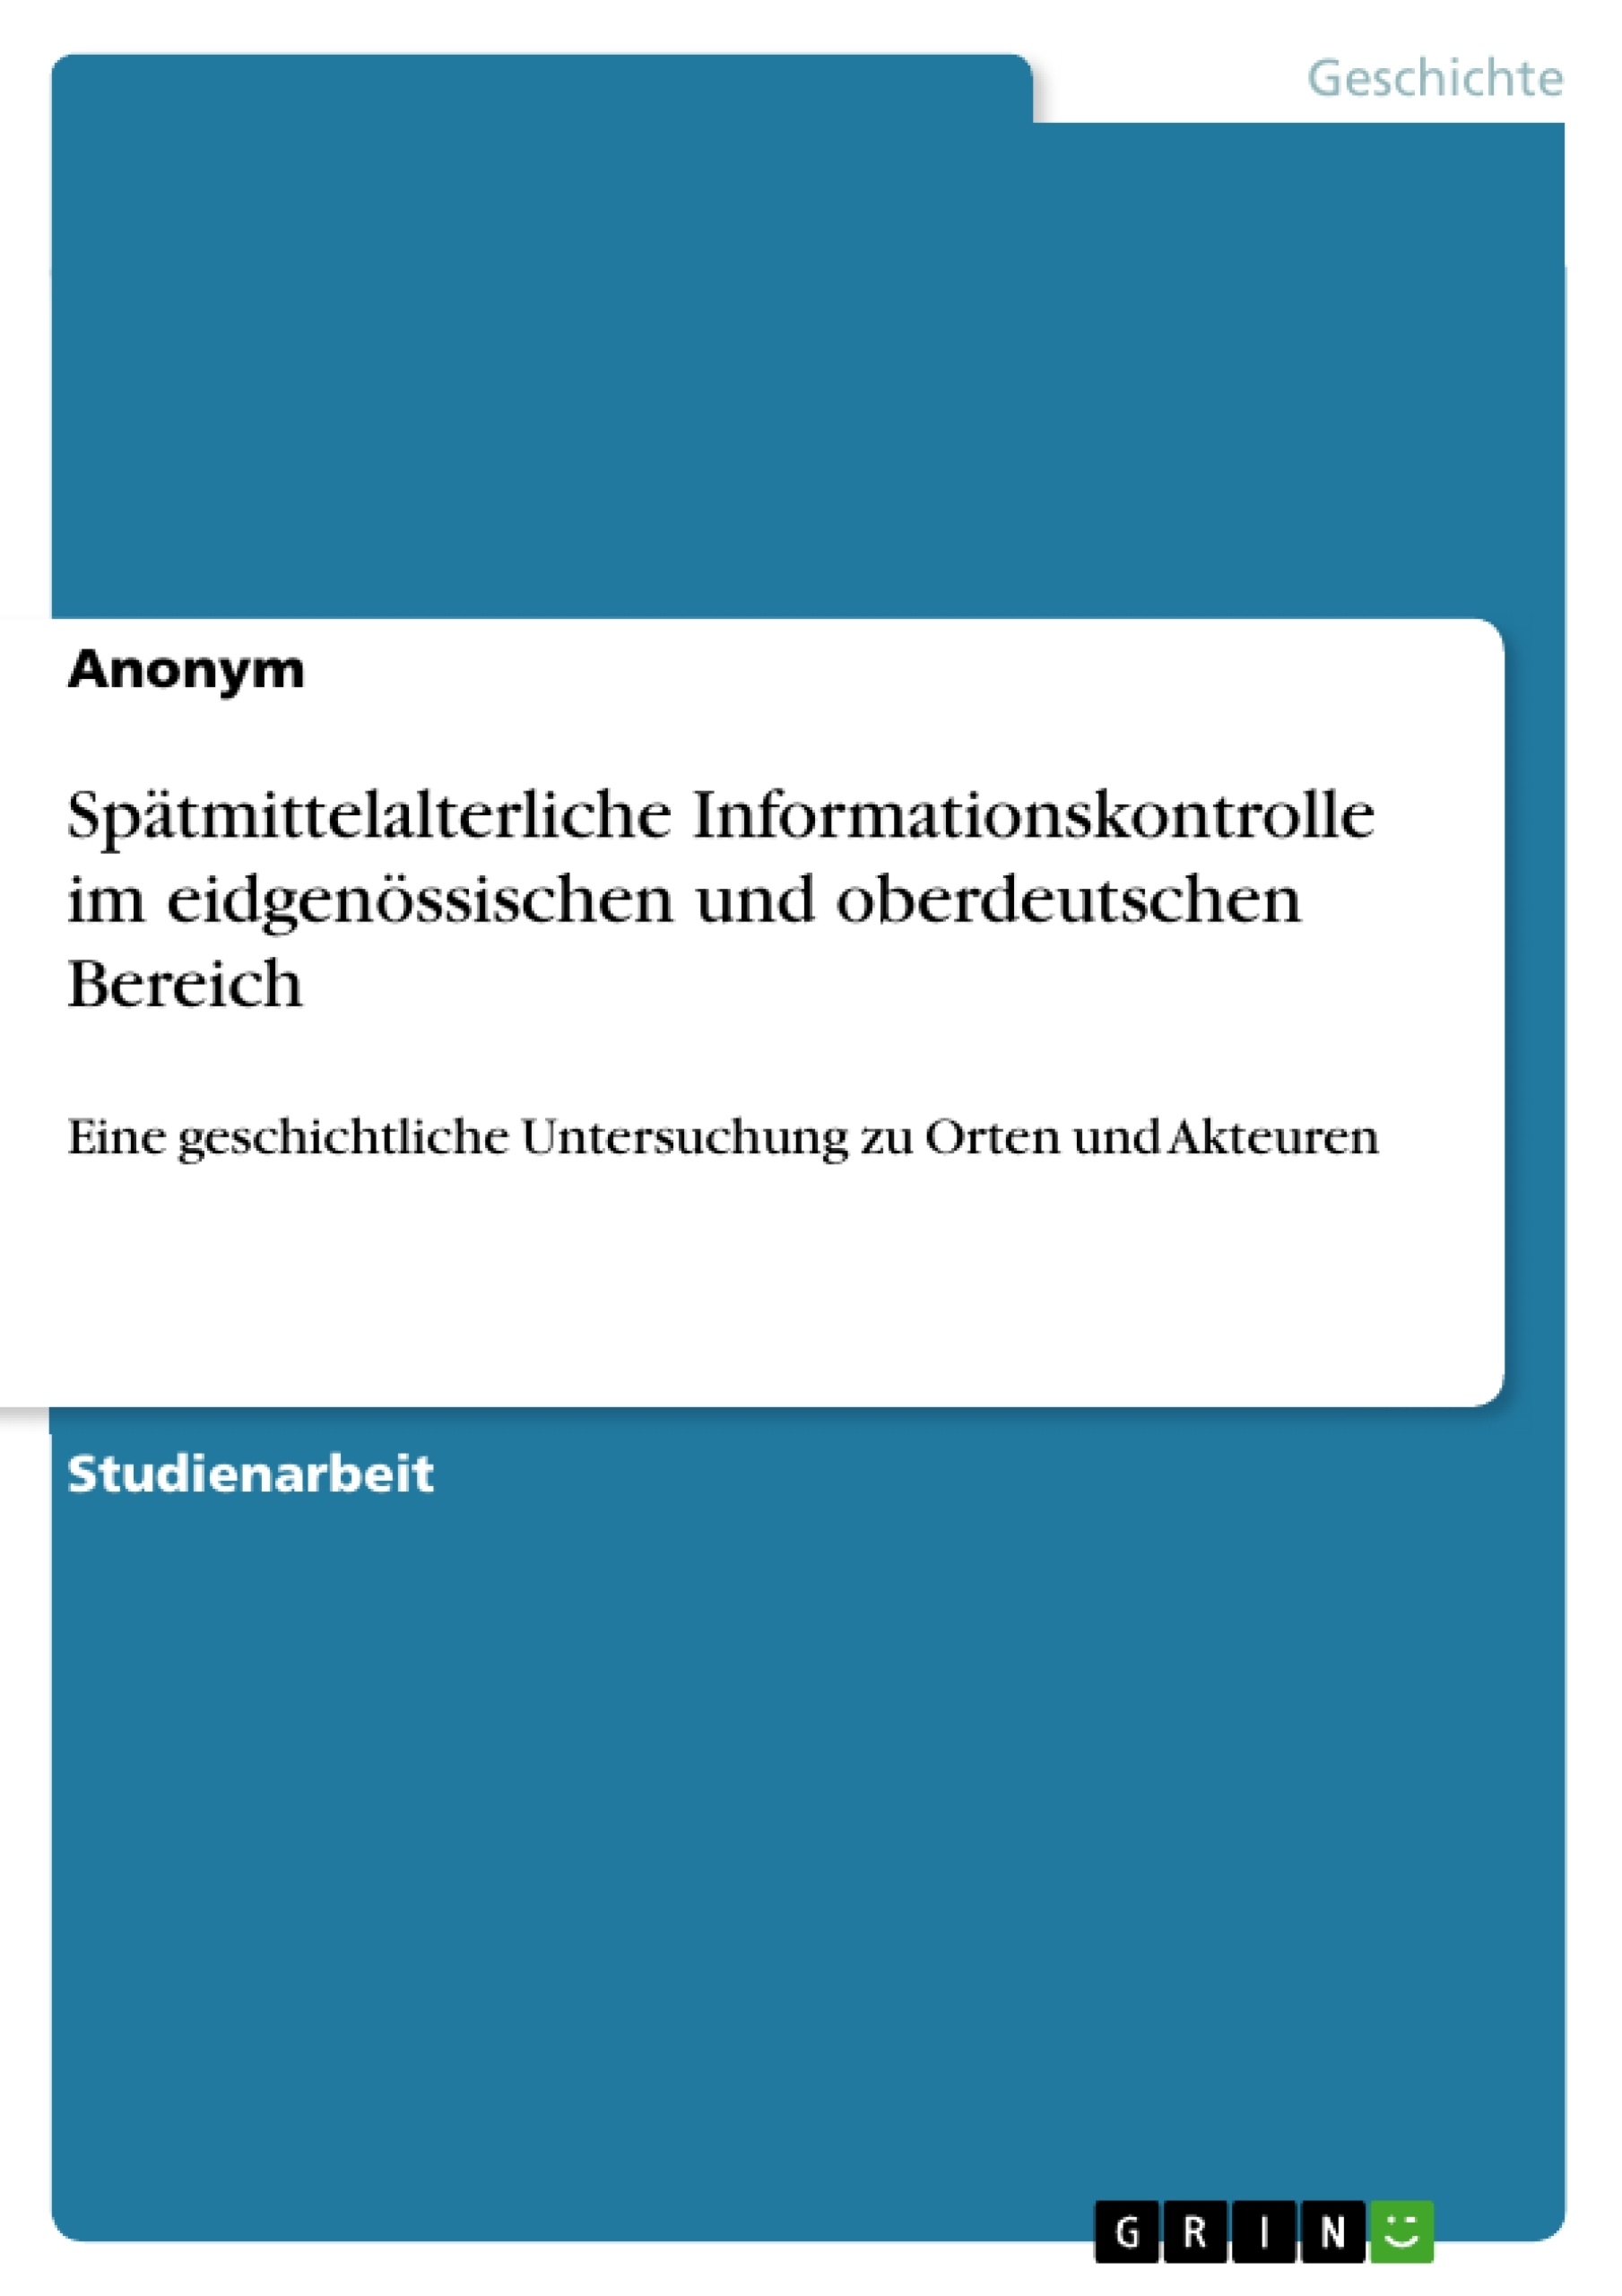 Title: Spätmittelalterliche Informationskontrolle im eidgenössischen und oberdeutschen Bereich